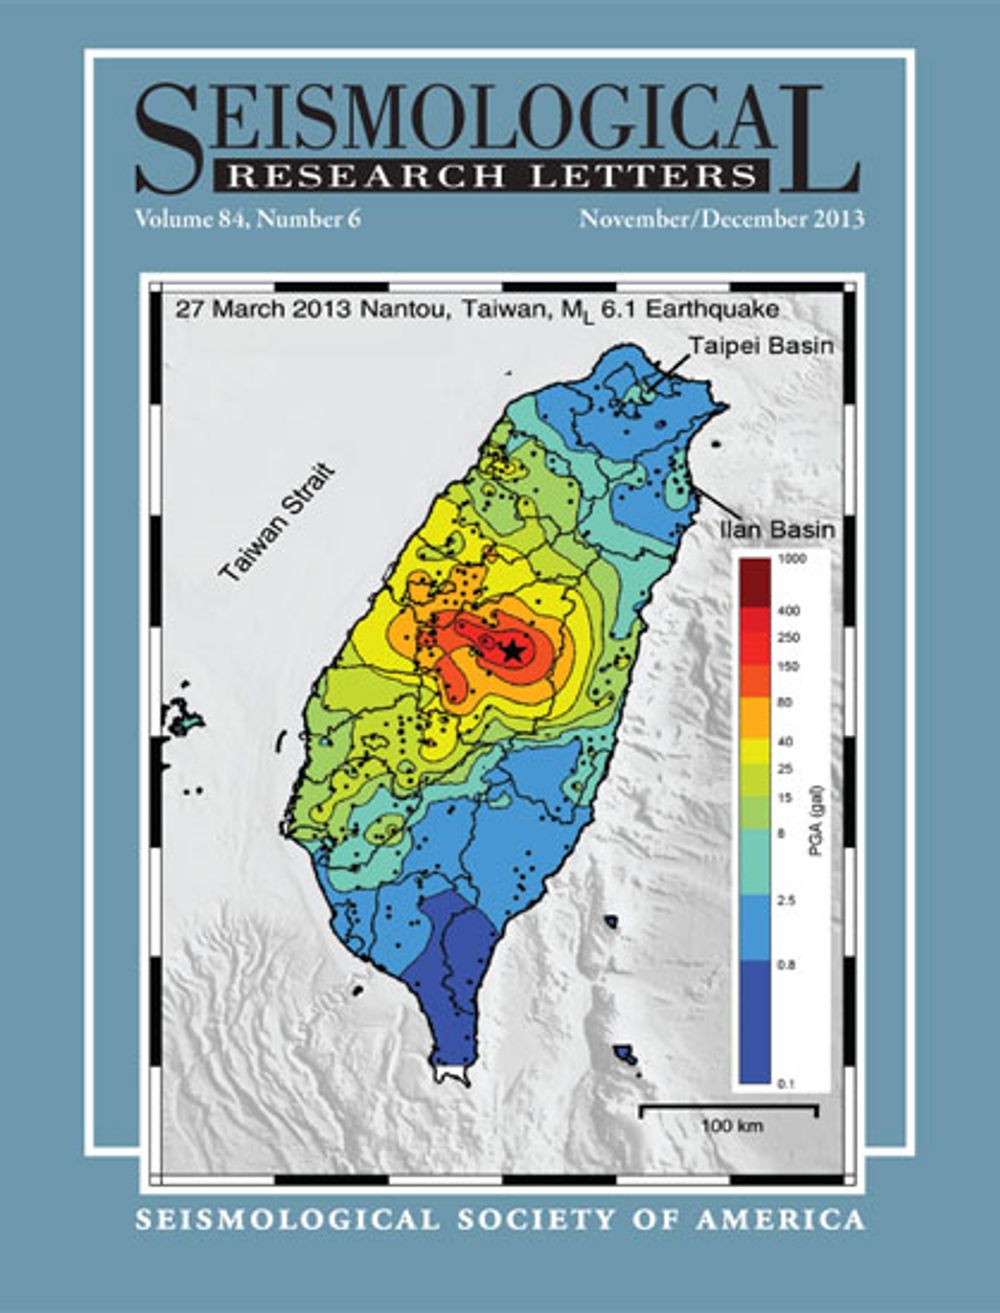 地震預警系統研究成果刊登國際期刊。